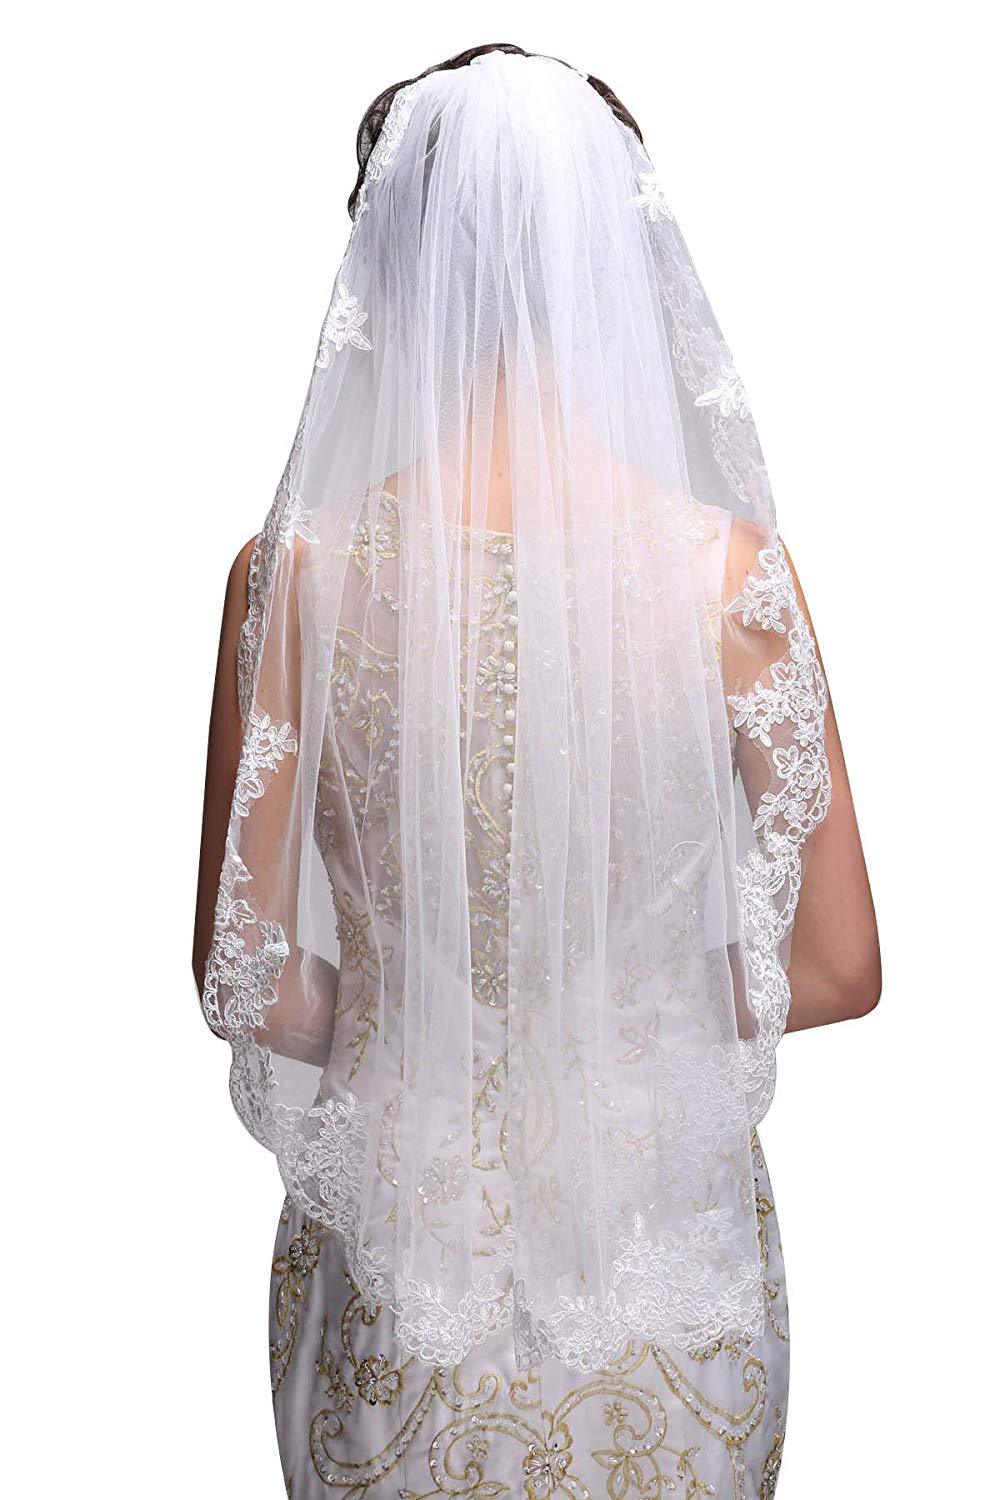 Ivory/White, Tulle, One-tier Fingertip Length Bridal Veil 36 — NK Bride